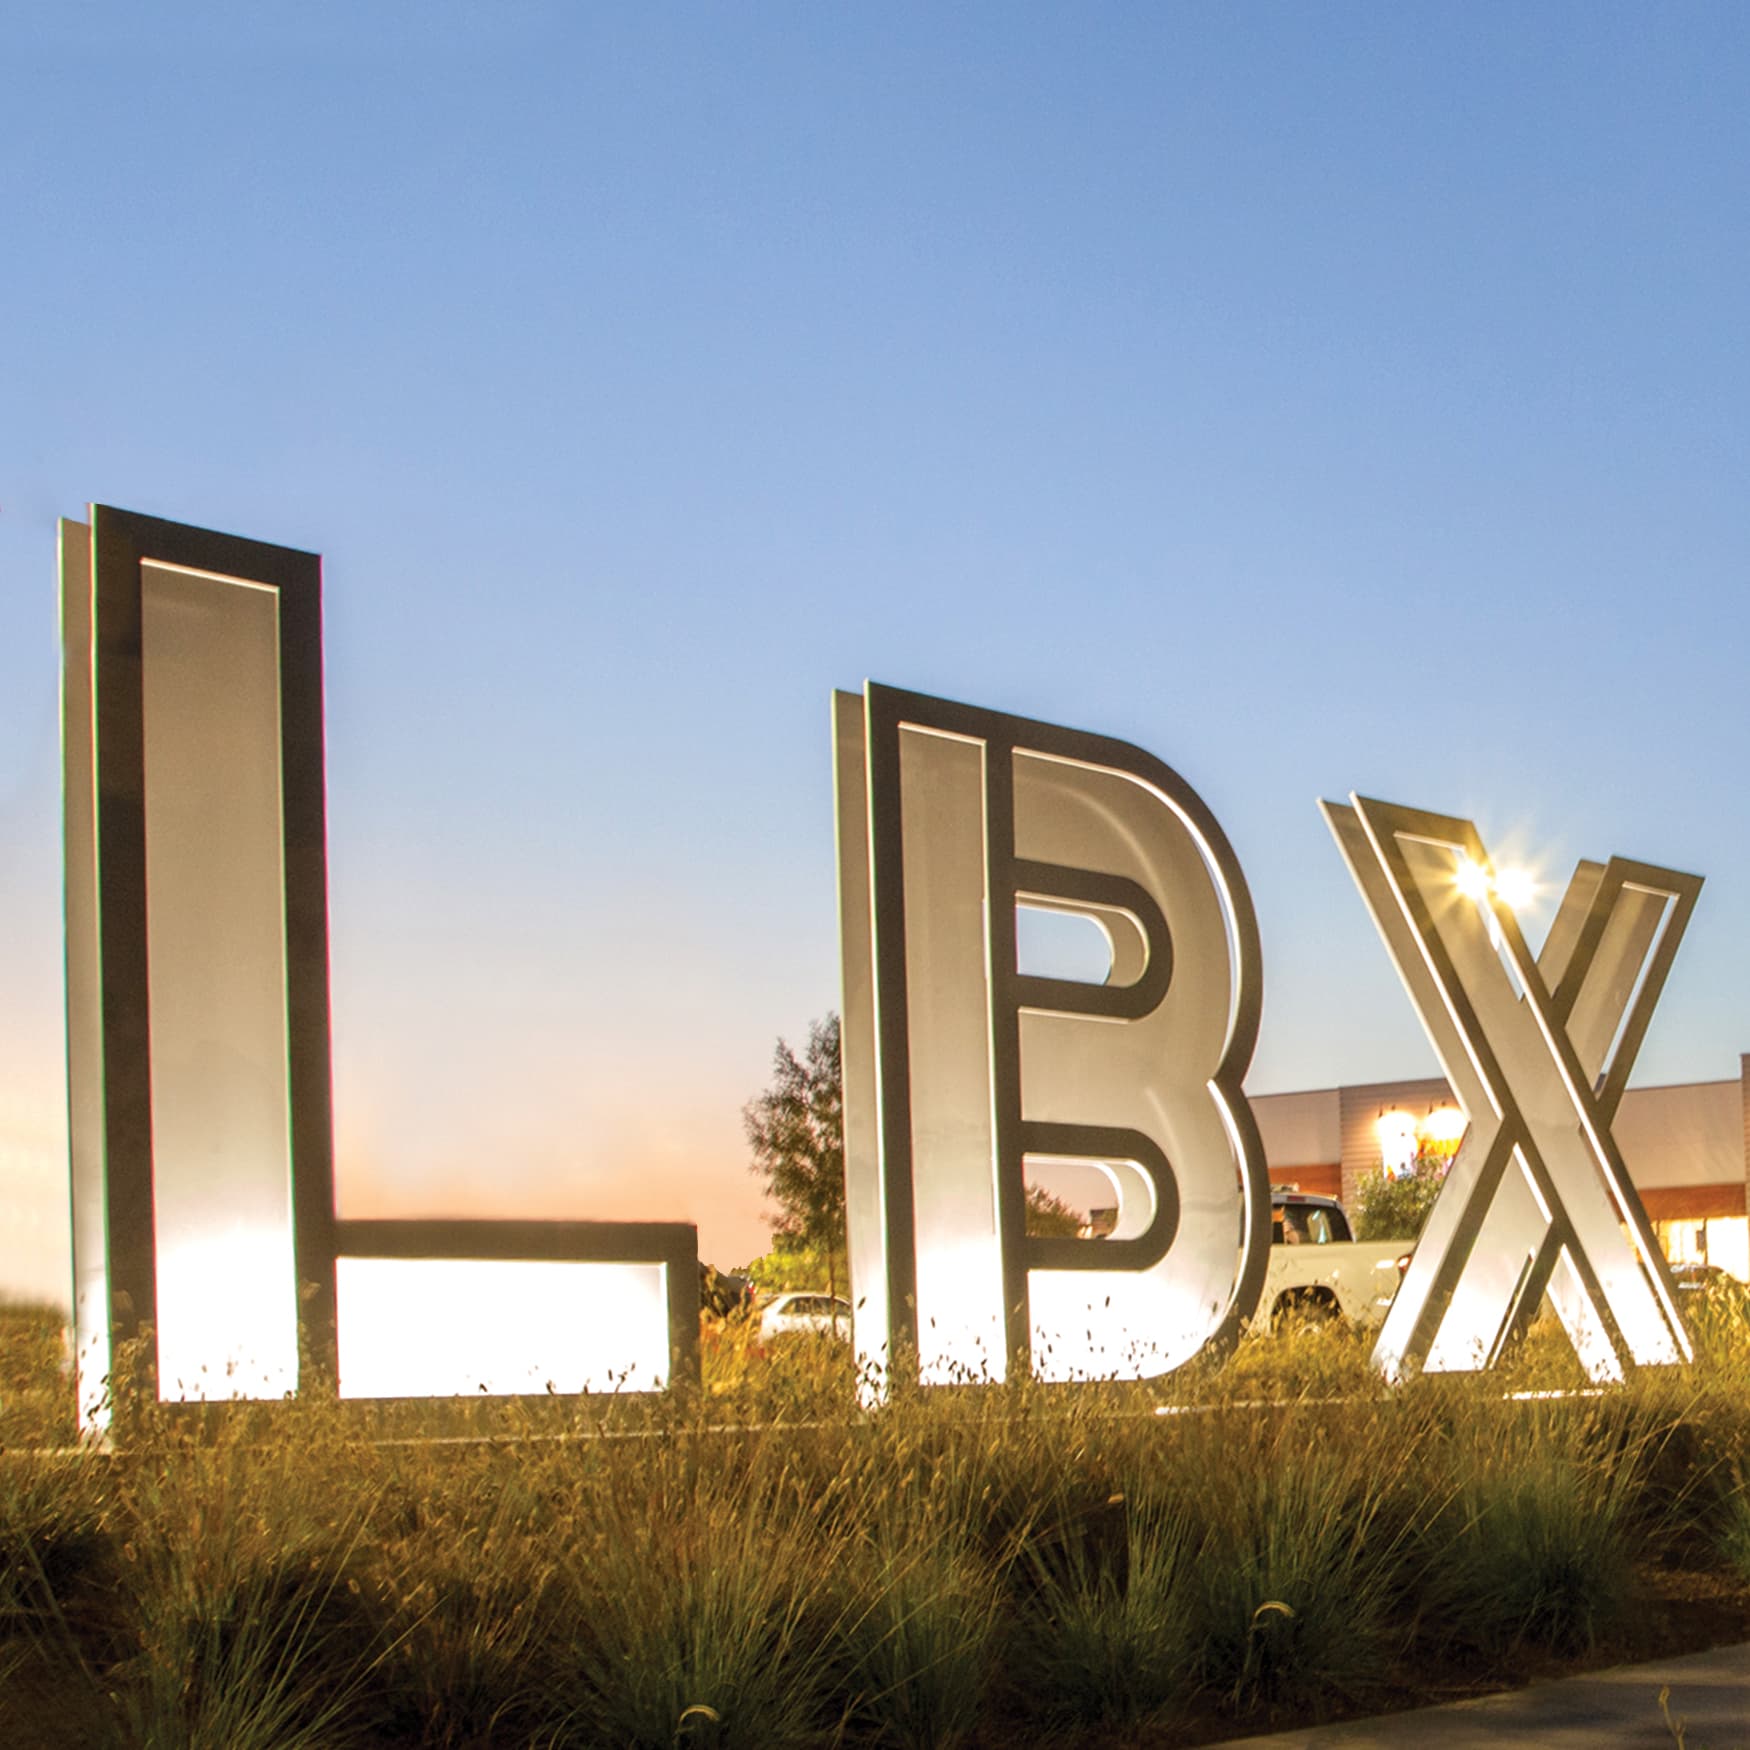 Long Beach Exchange monument large letter signage illuminated at dusk